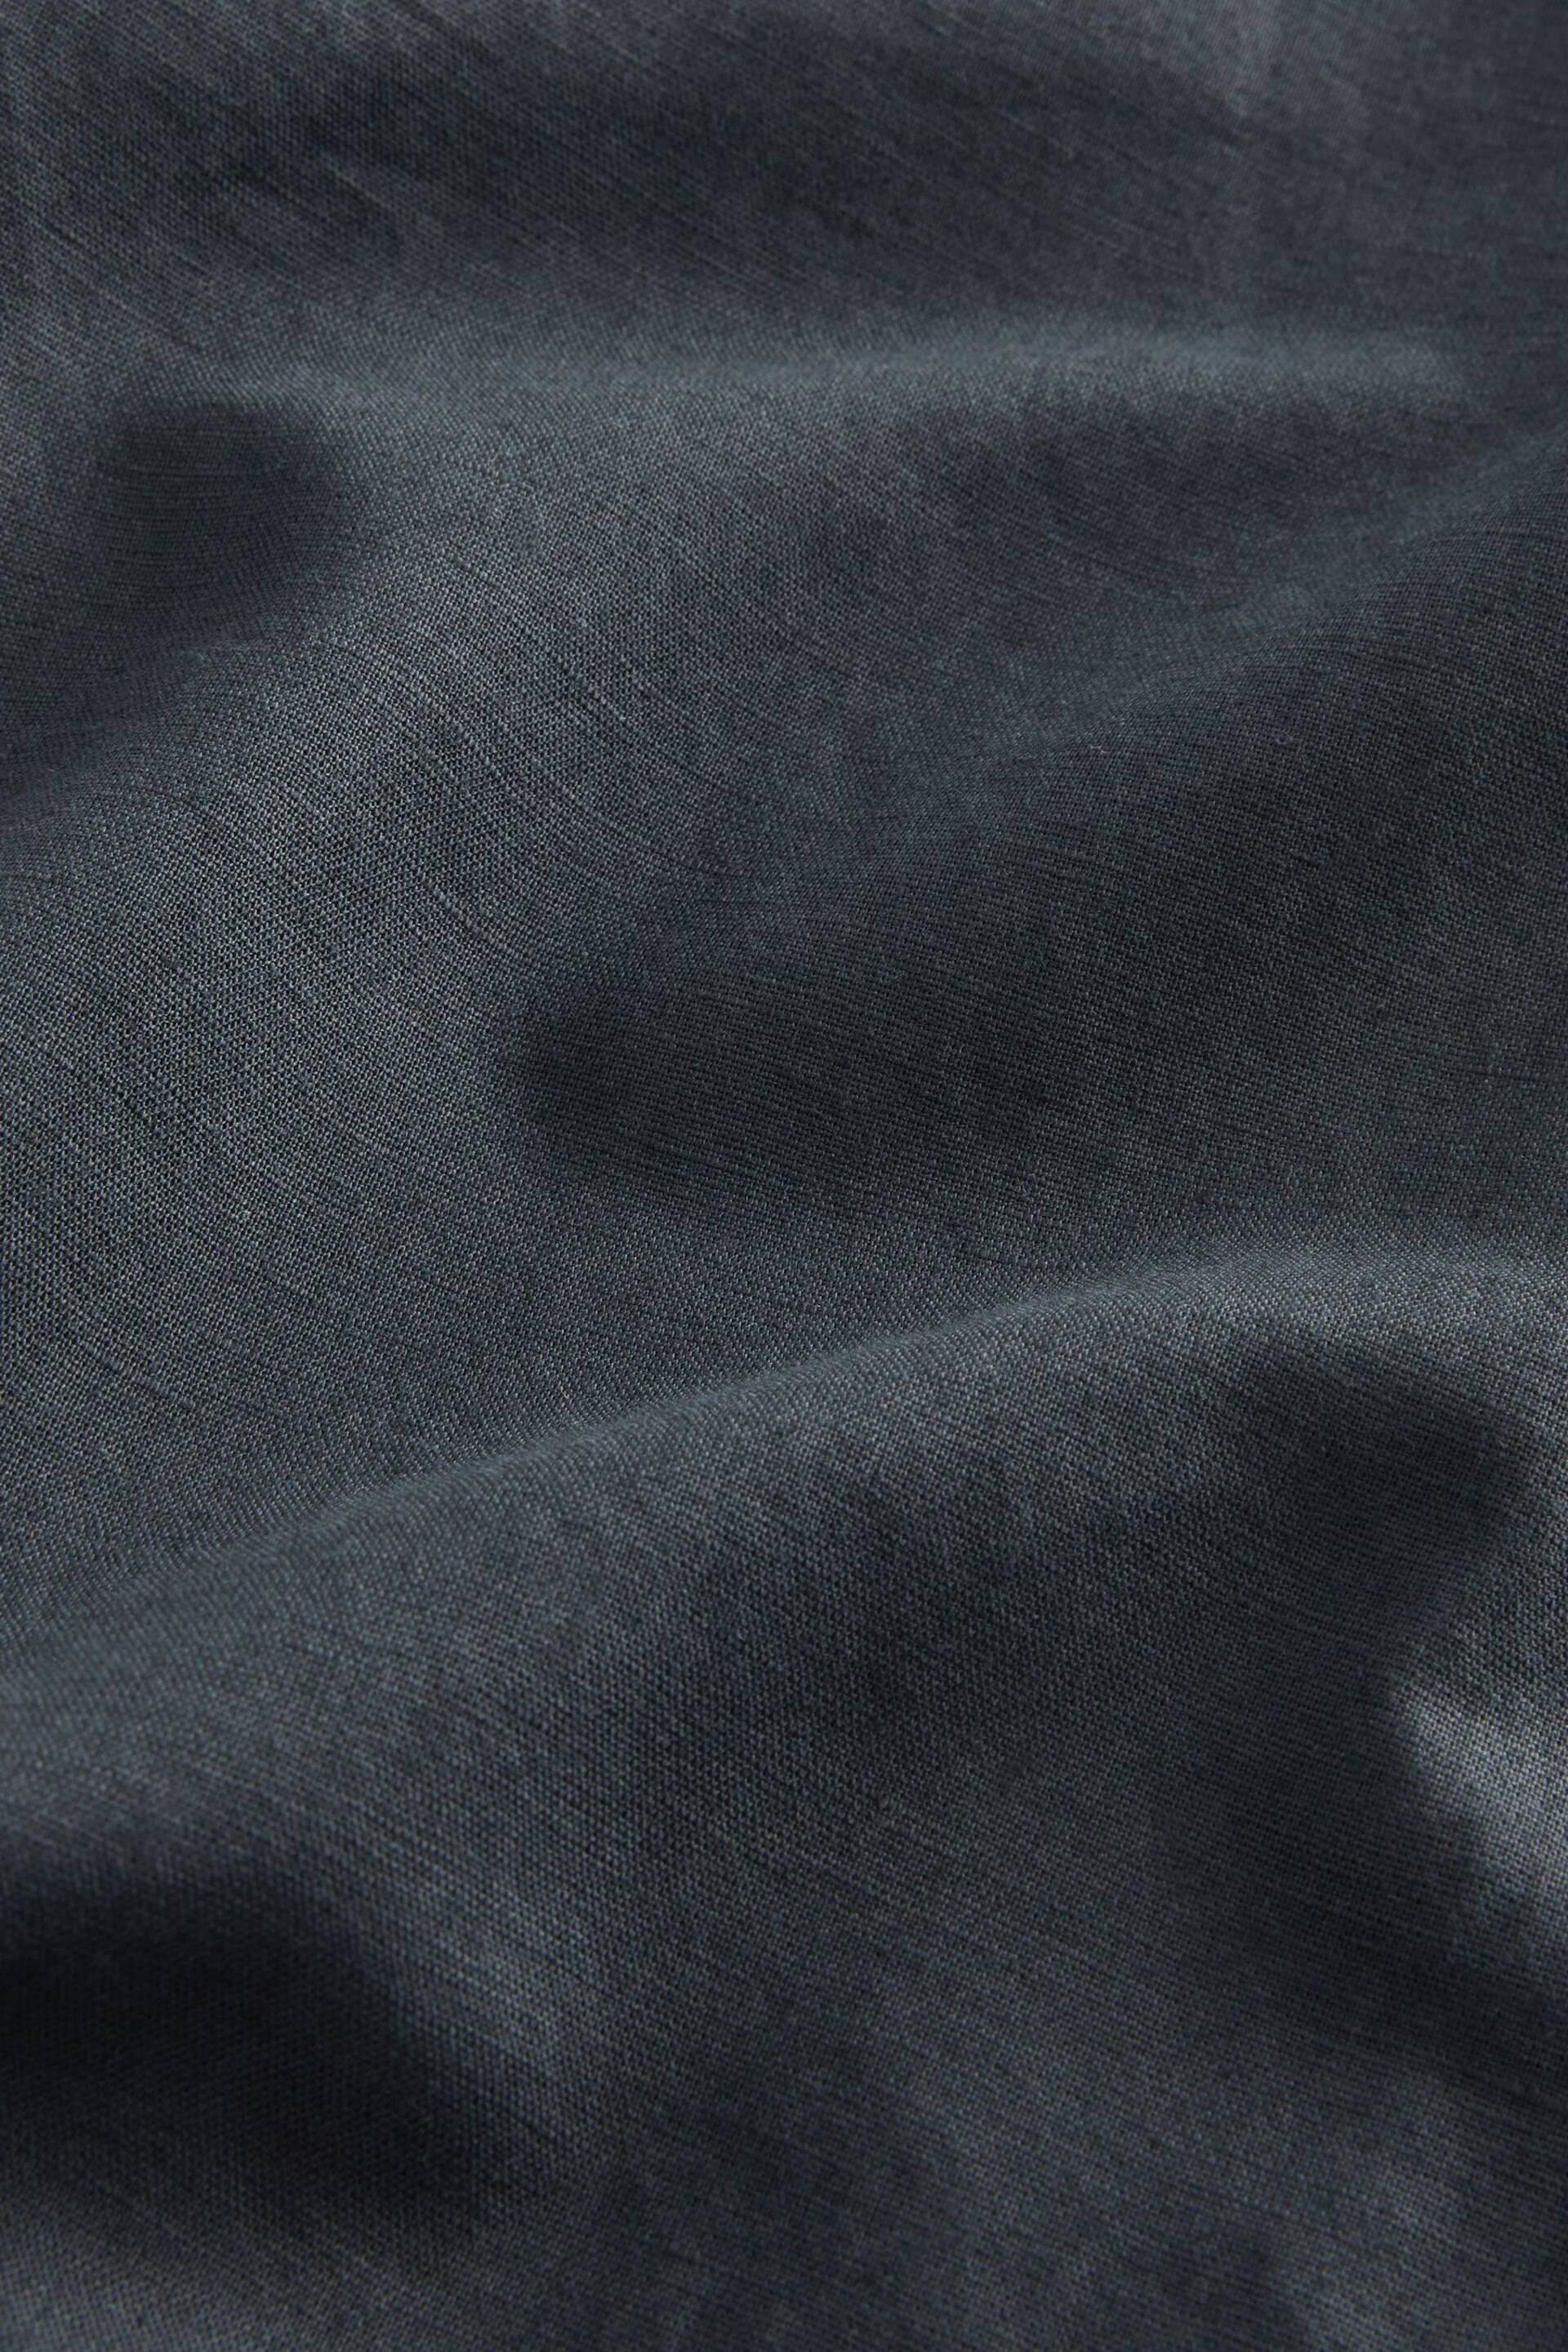 Black Cuban Collar Linen Blend Short Sleeve Shirt - Image 6 of 6